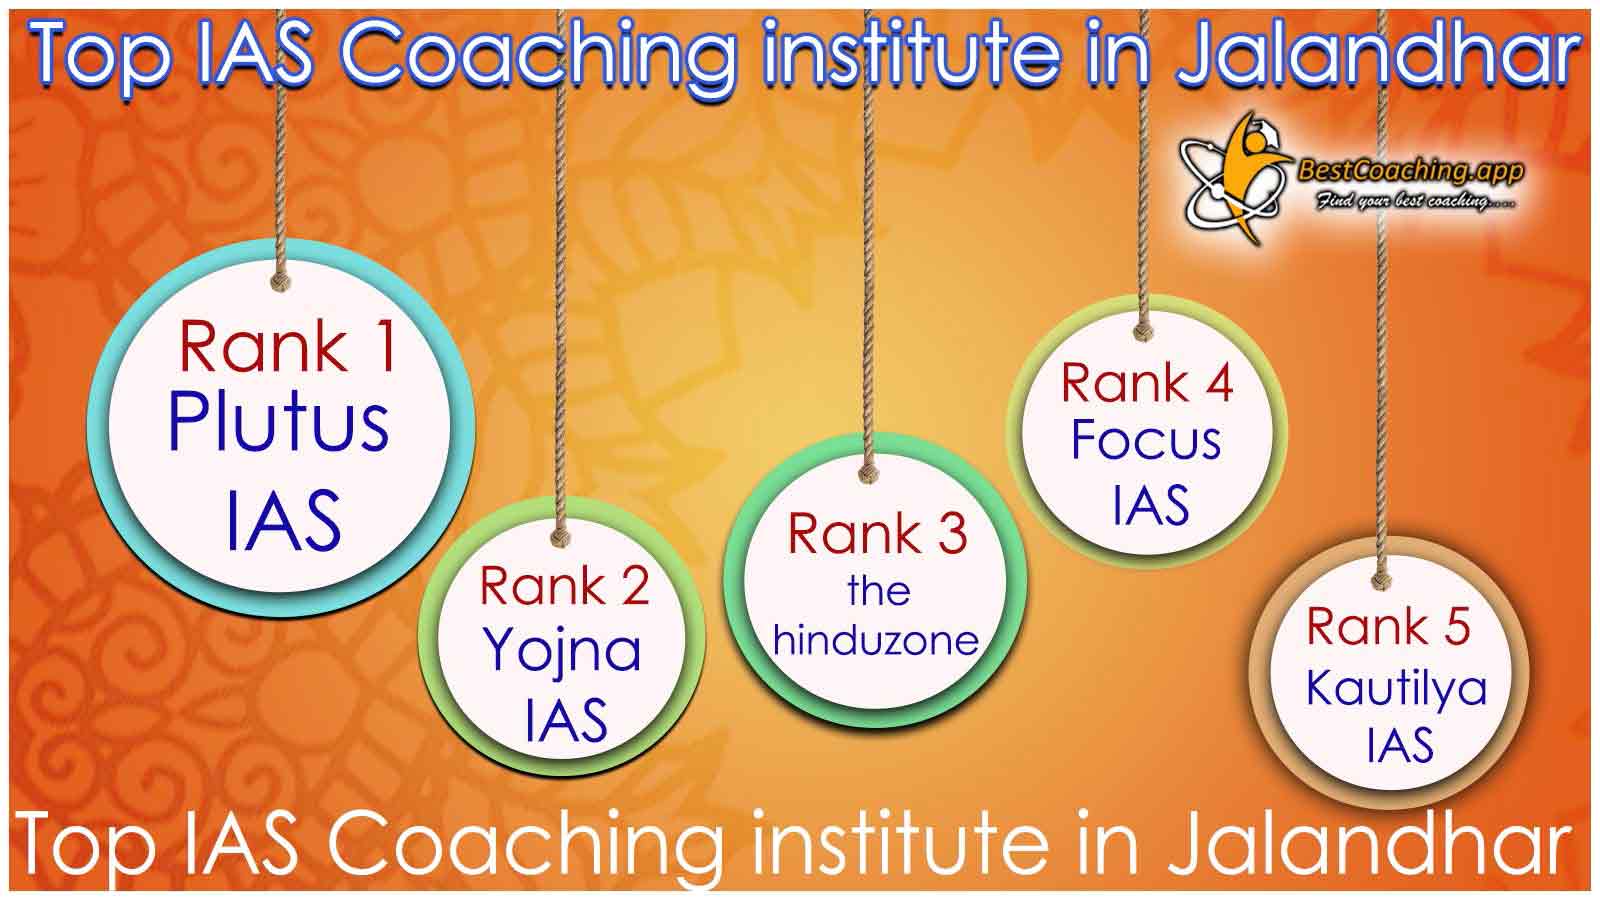 Best IAS Coaching in Jalandhar